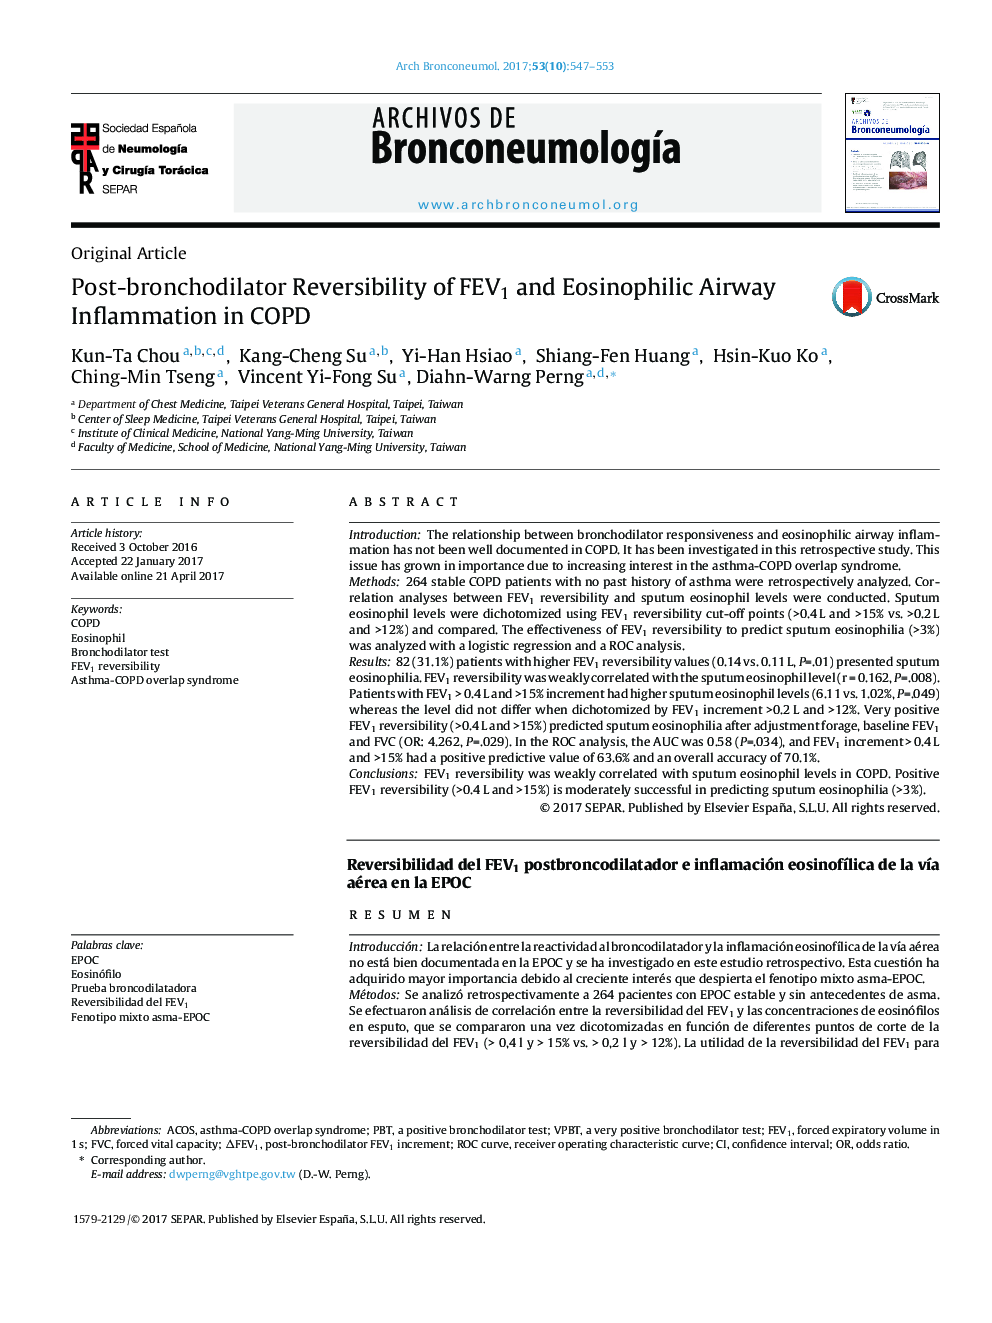 Original ArticlePost-bronchodilator Reversibility of FEV1 and Eosinophilic Airway Inflammation in COPDReversibilidad del FEV1 postbroncodilatador e inflamación eosinofÃ­lica de la vÃ­a aÃ¨c)rea en la EPOC